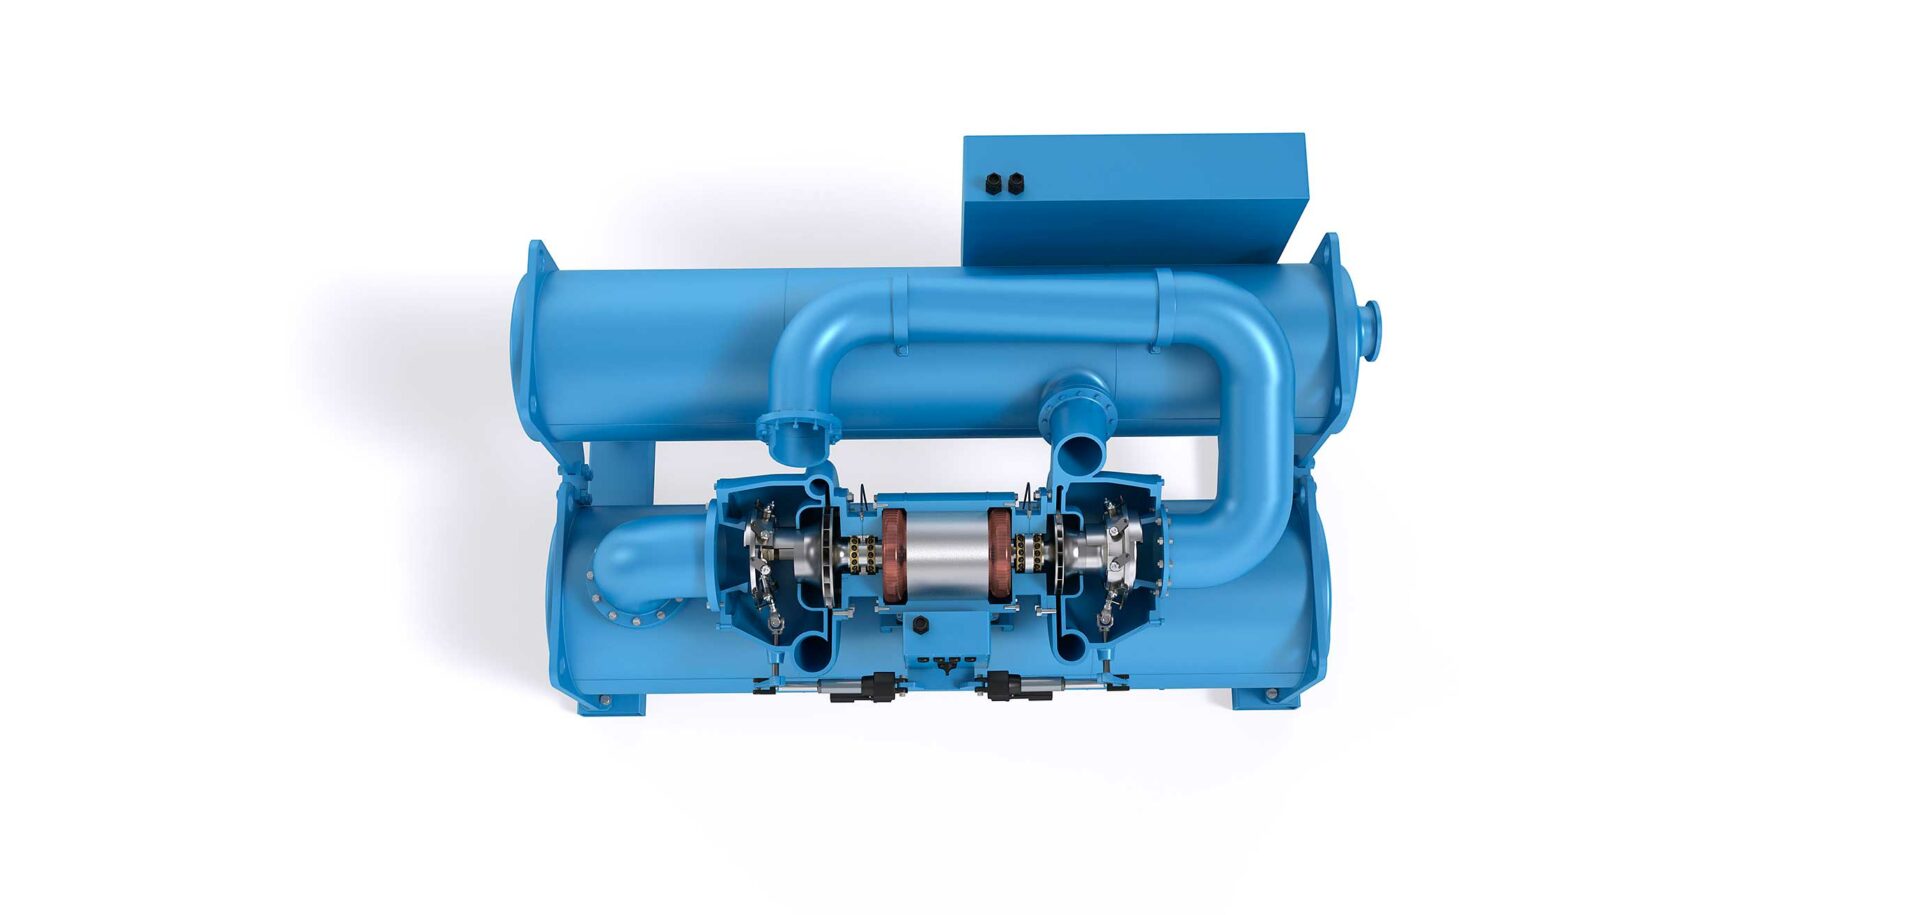 Technologie de lubrification des compresseurs centrifuges sans huile basée exclusivement sur le fluide réfrigérant